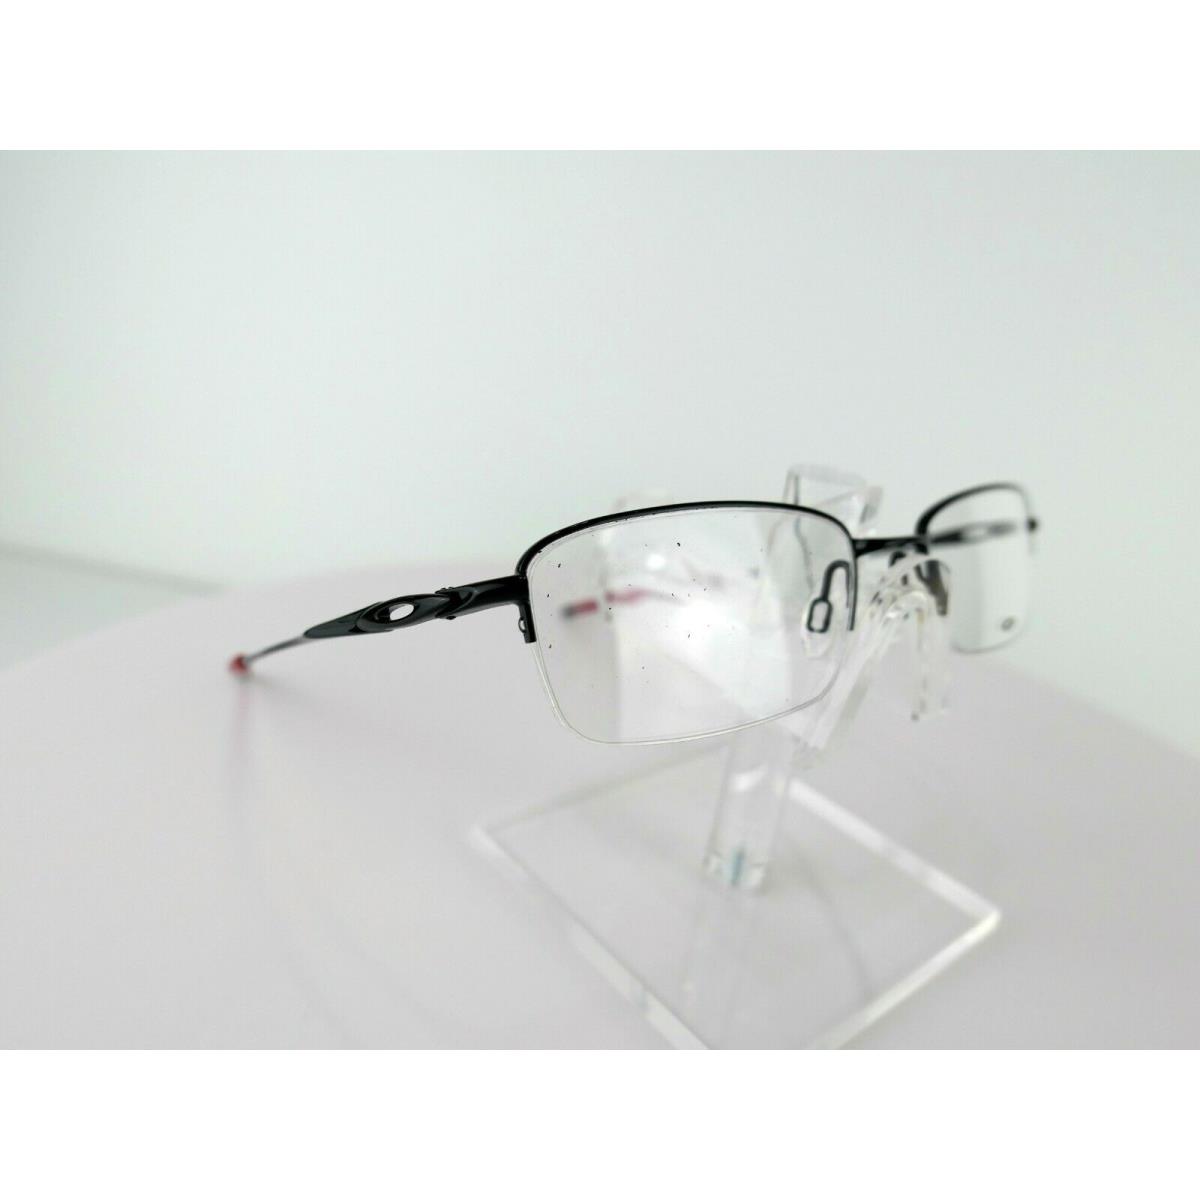 Oakley eyeglasses  - Black , Polished Black / Red Frame 6